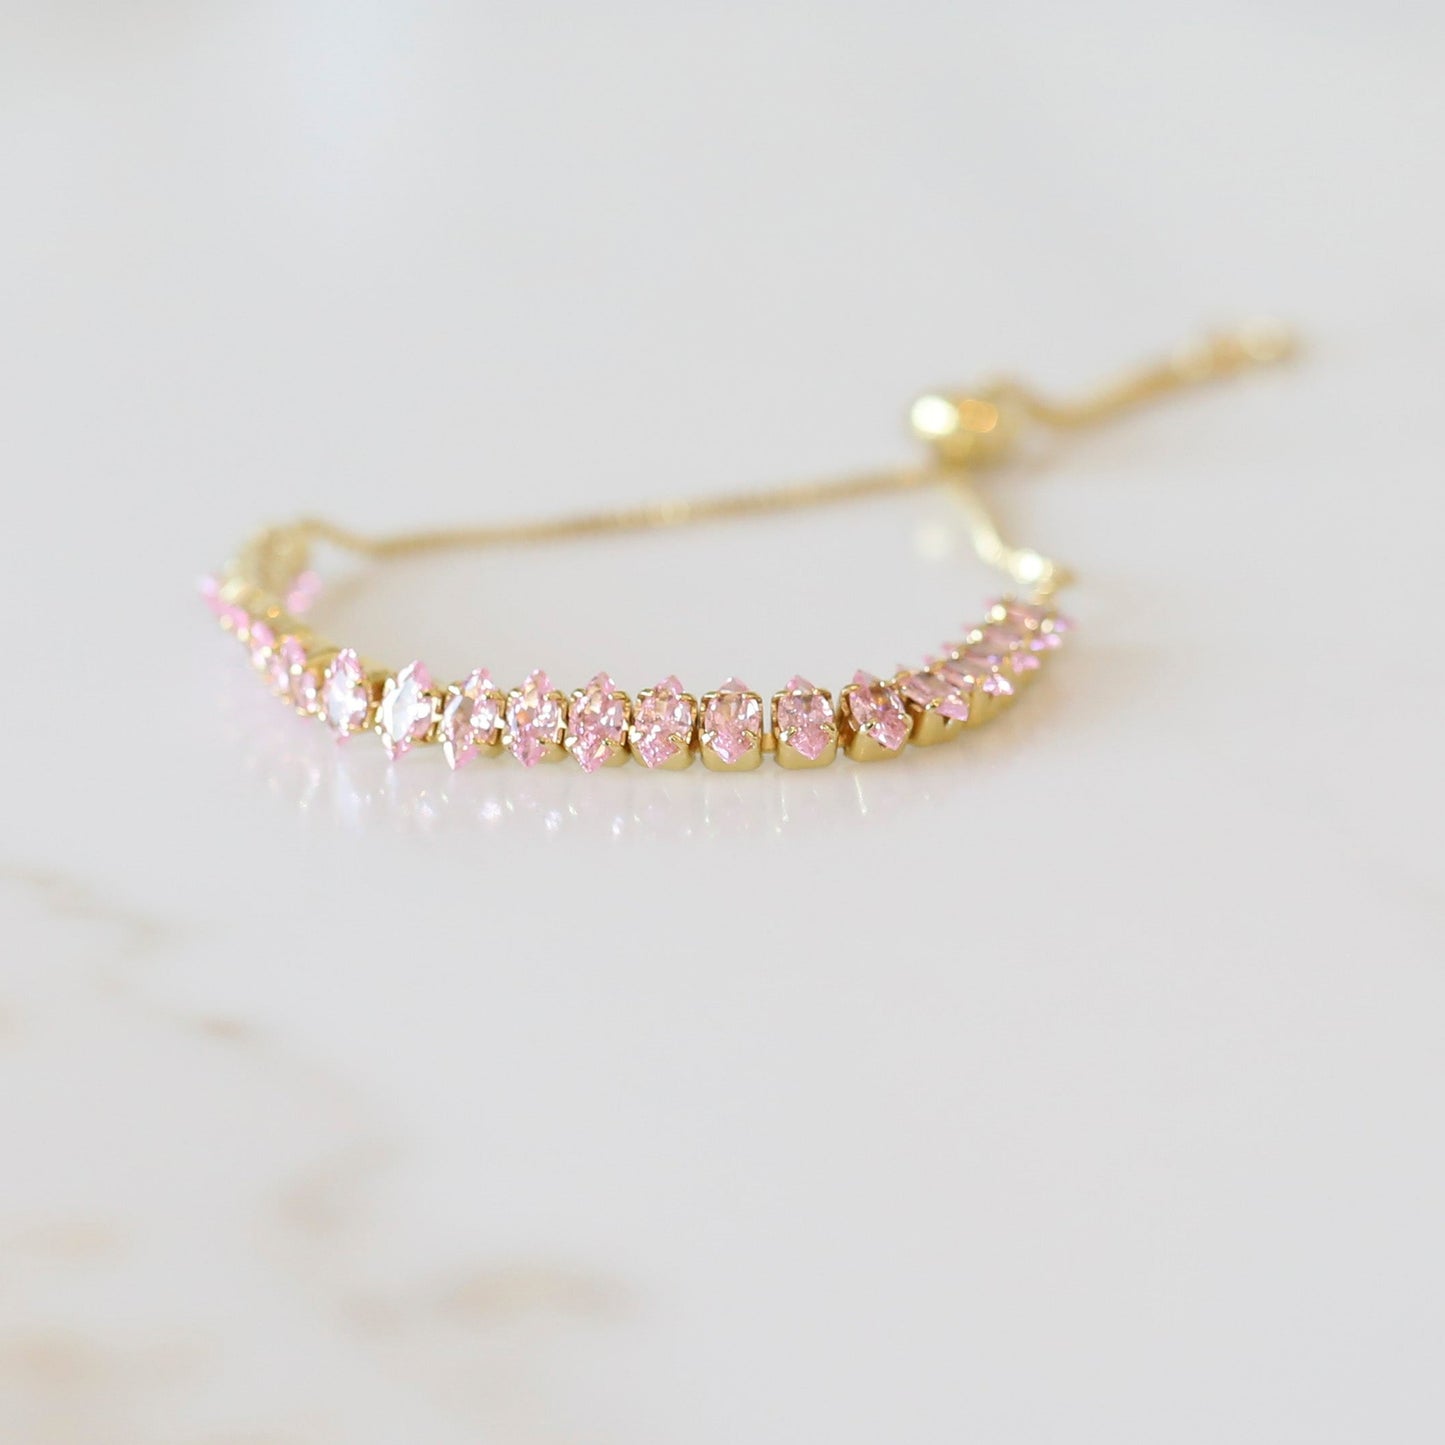 CZ Crystal Slide Bracelet available in Pink